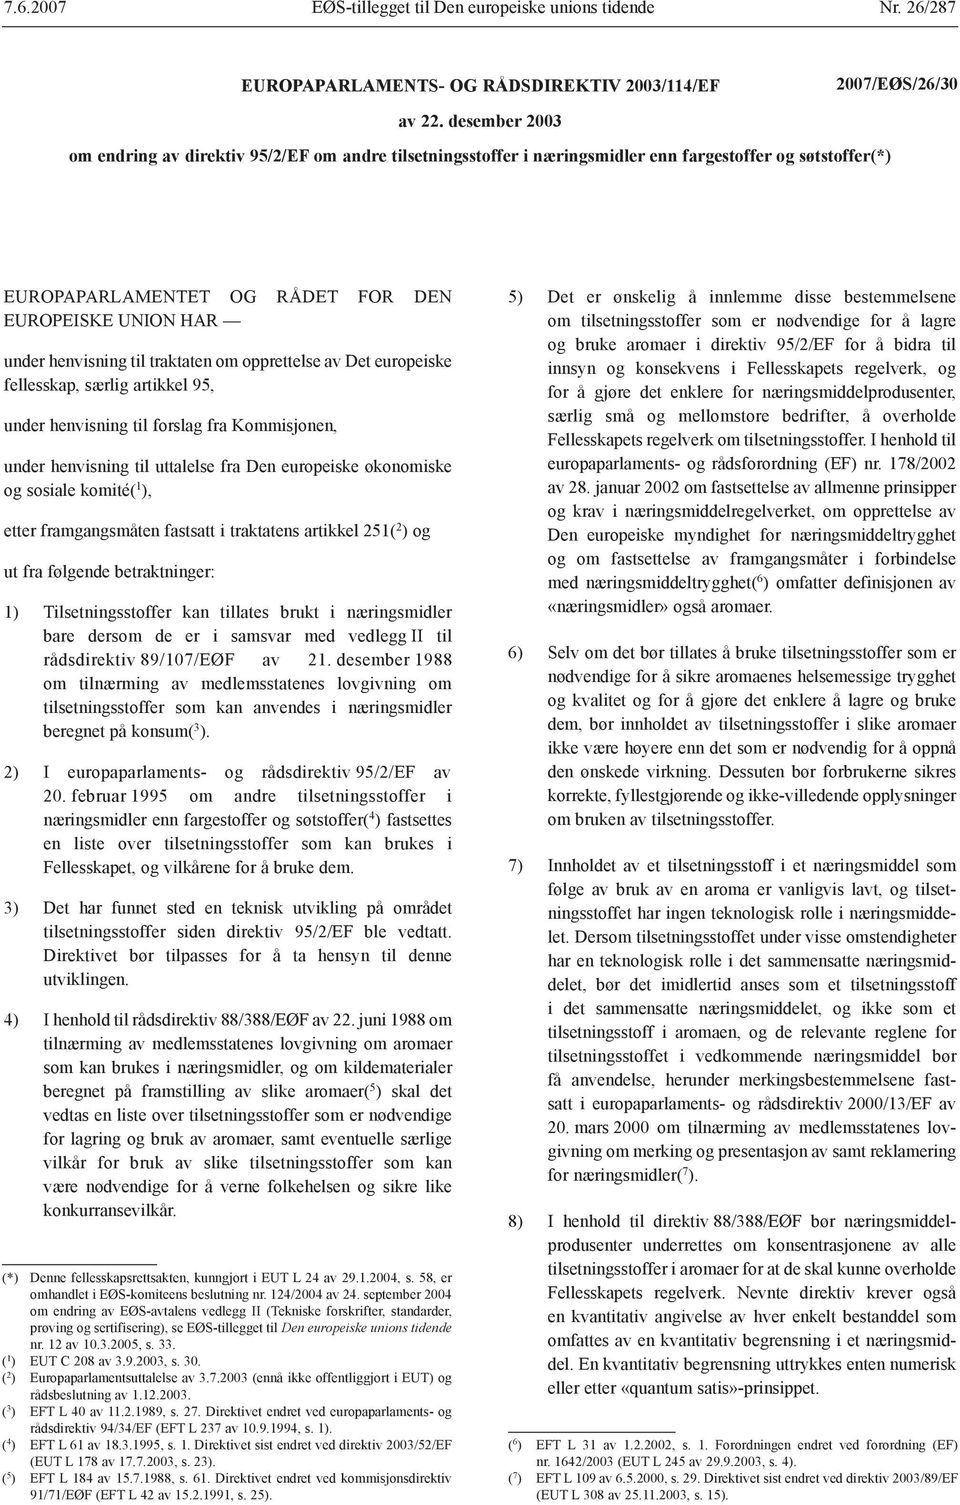 traktaten om opprettelse av Det europeiske fellesskap, særlig artikkel 95, under henvisning til forslag fra Kommisjonen, under henvisning til uttalelse fra Den europeiske økonomiske og sosiale